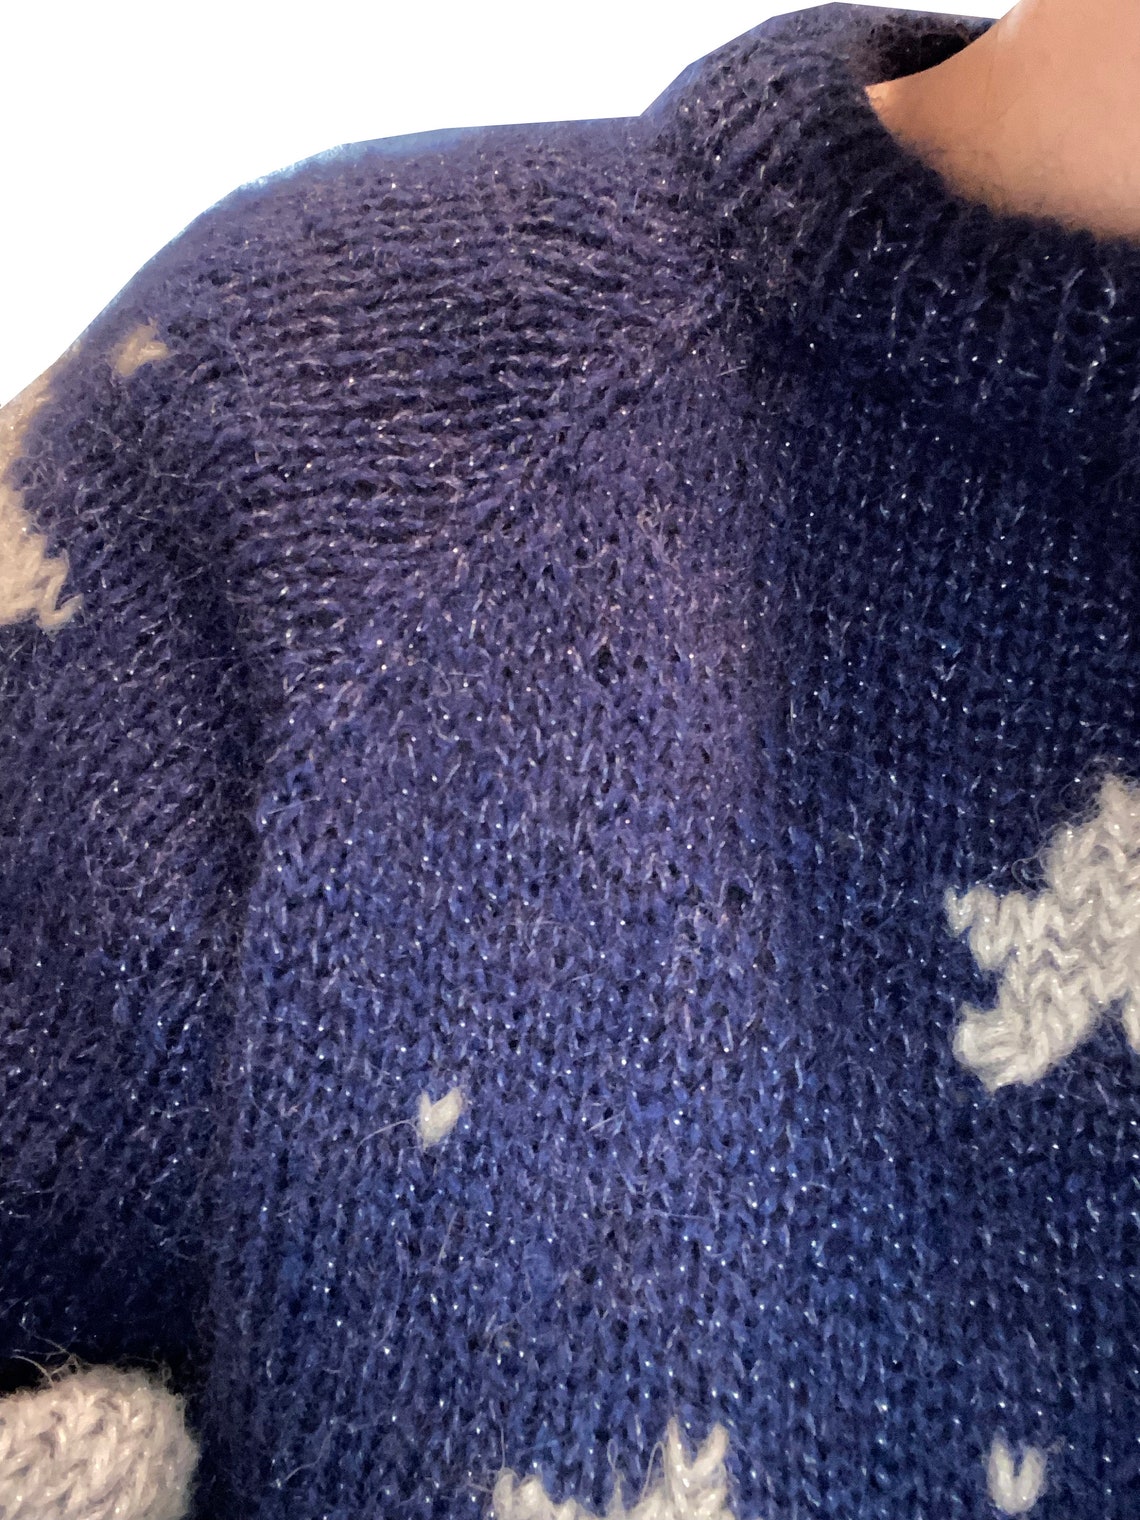 CORALINE Raglan Stars Sweater Knitting Pattern - Etsy